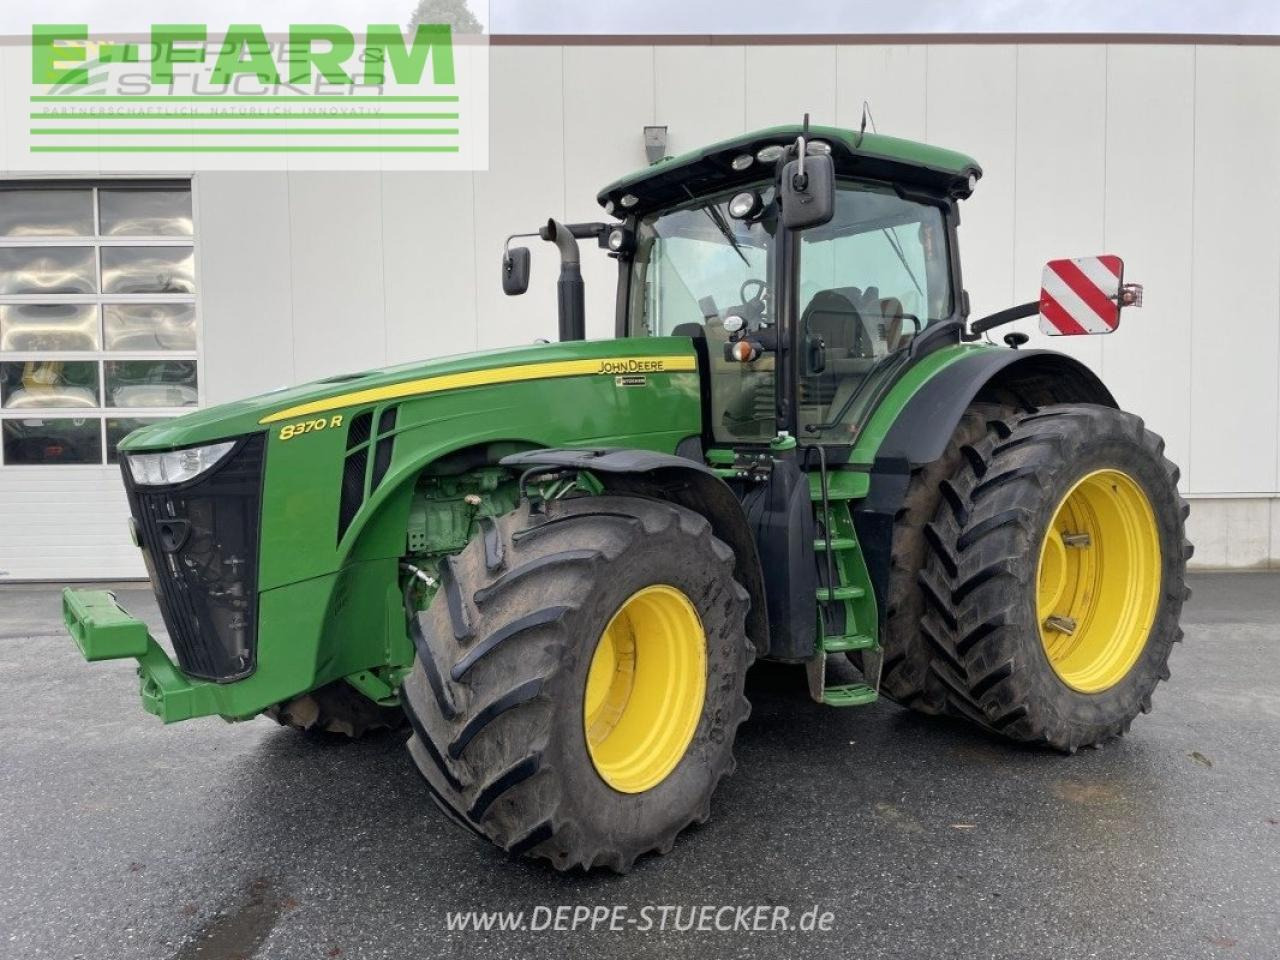 Farm tractor John Deere 8370r e23: picture 11